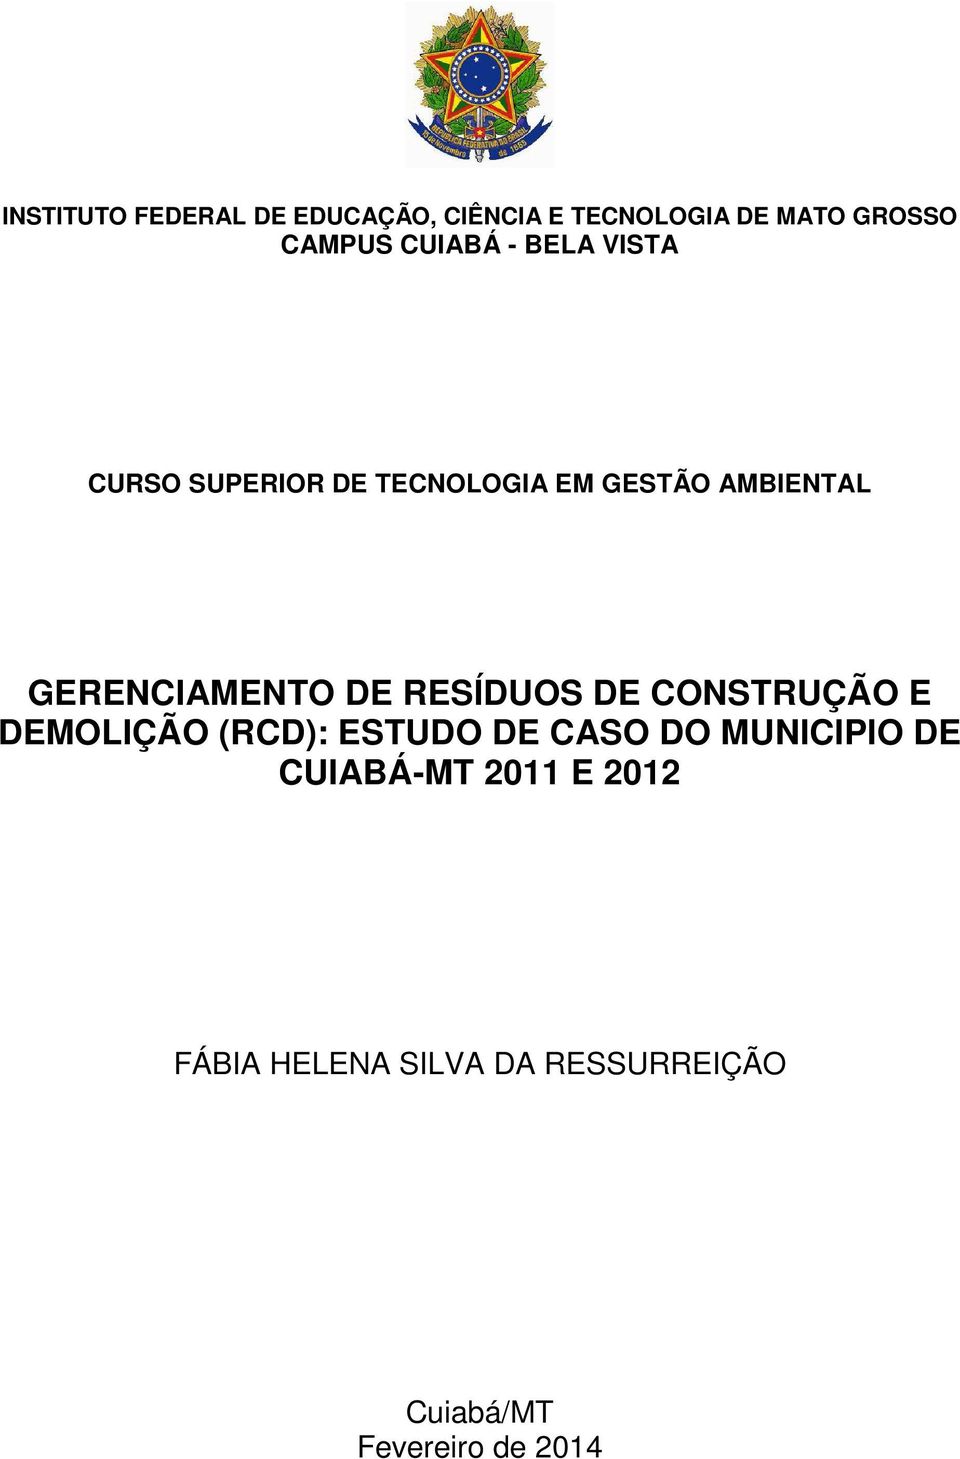 GERENCIAMENTO DE RESÍDUOS DE CONSTRUÇÃO E DEMOLIÇÃO (RCD): ESTUDO DE CASO DO